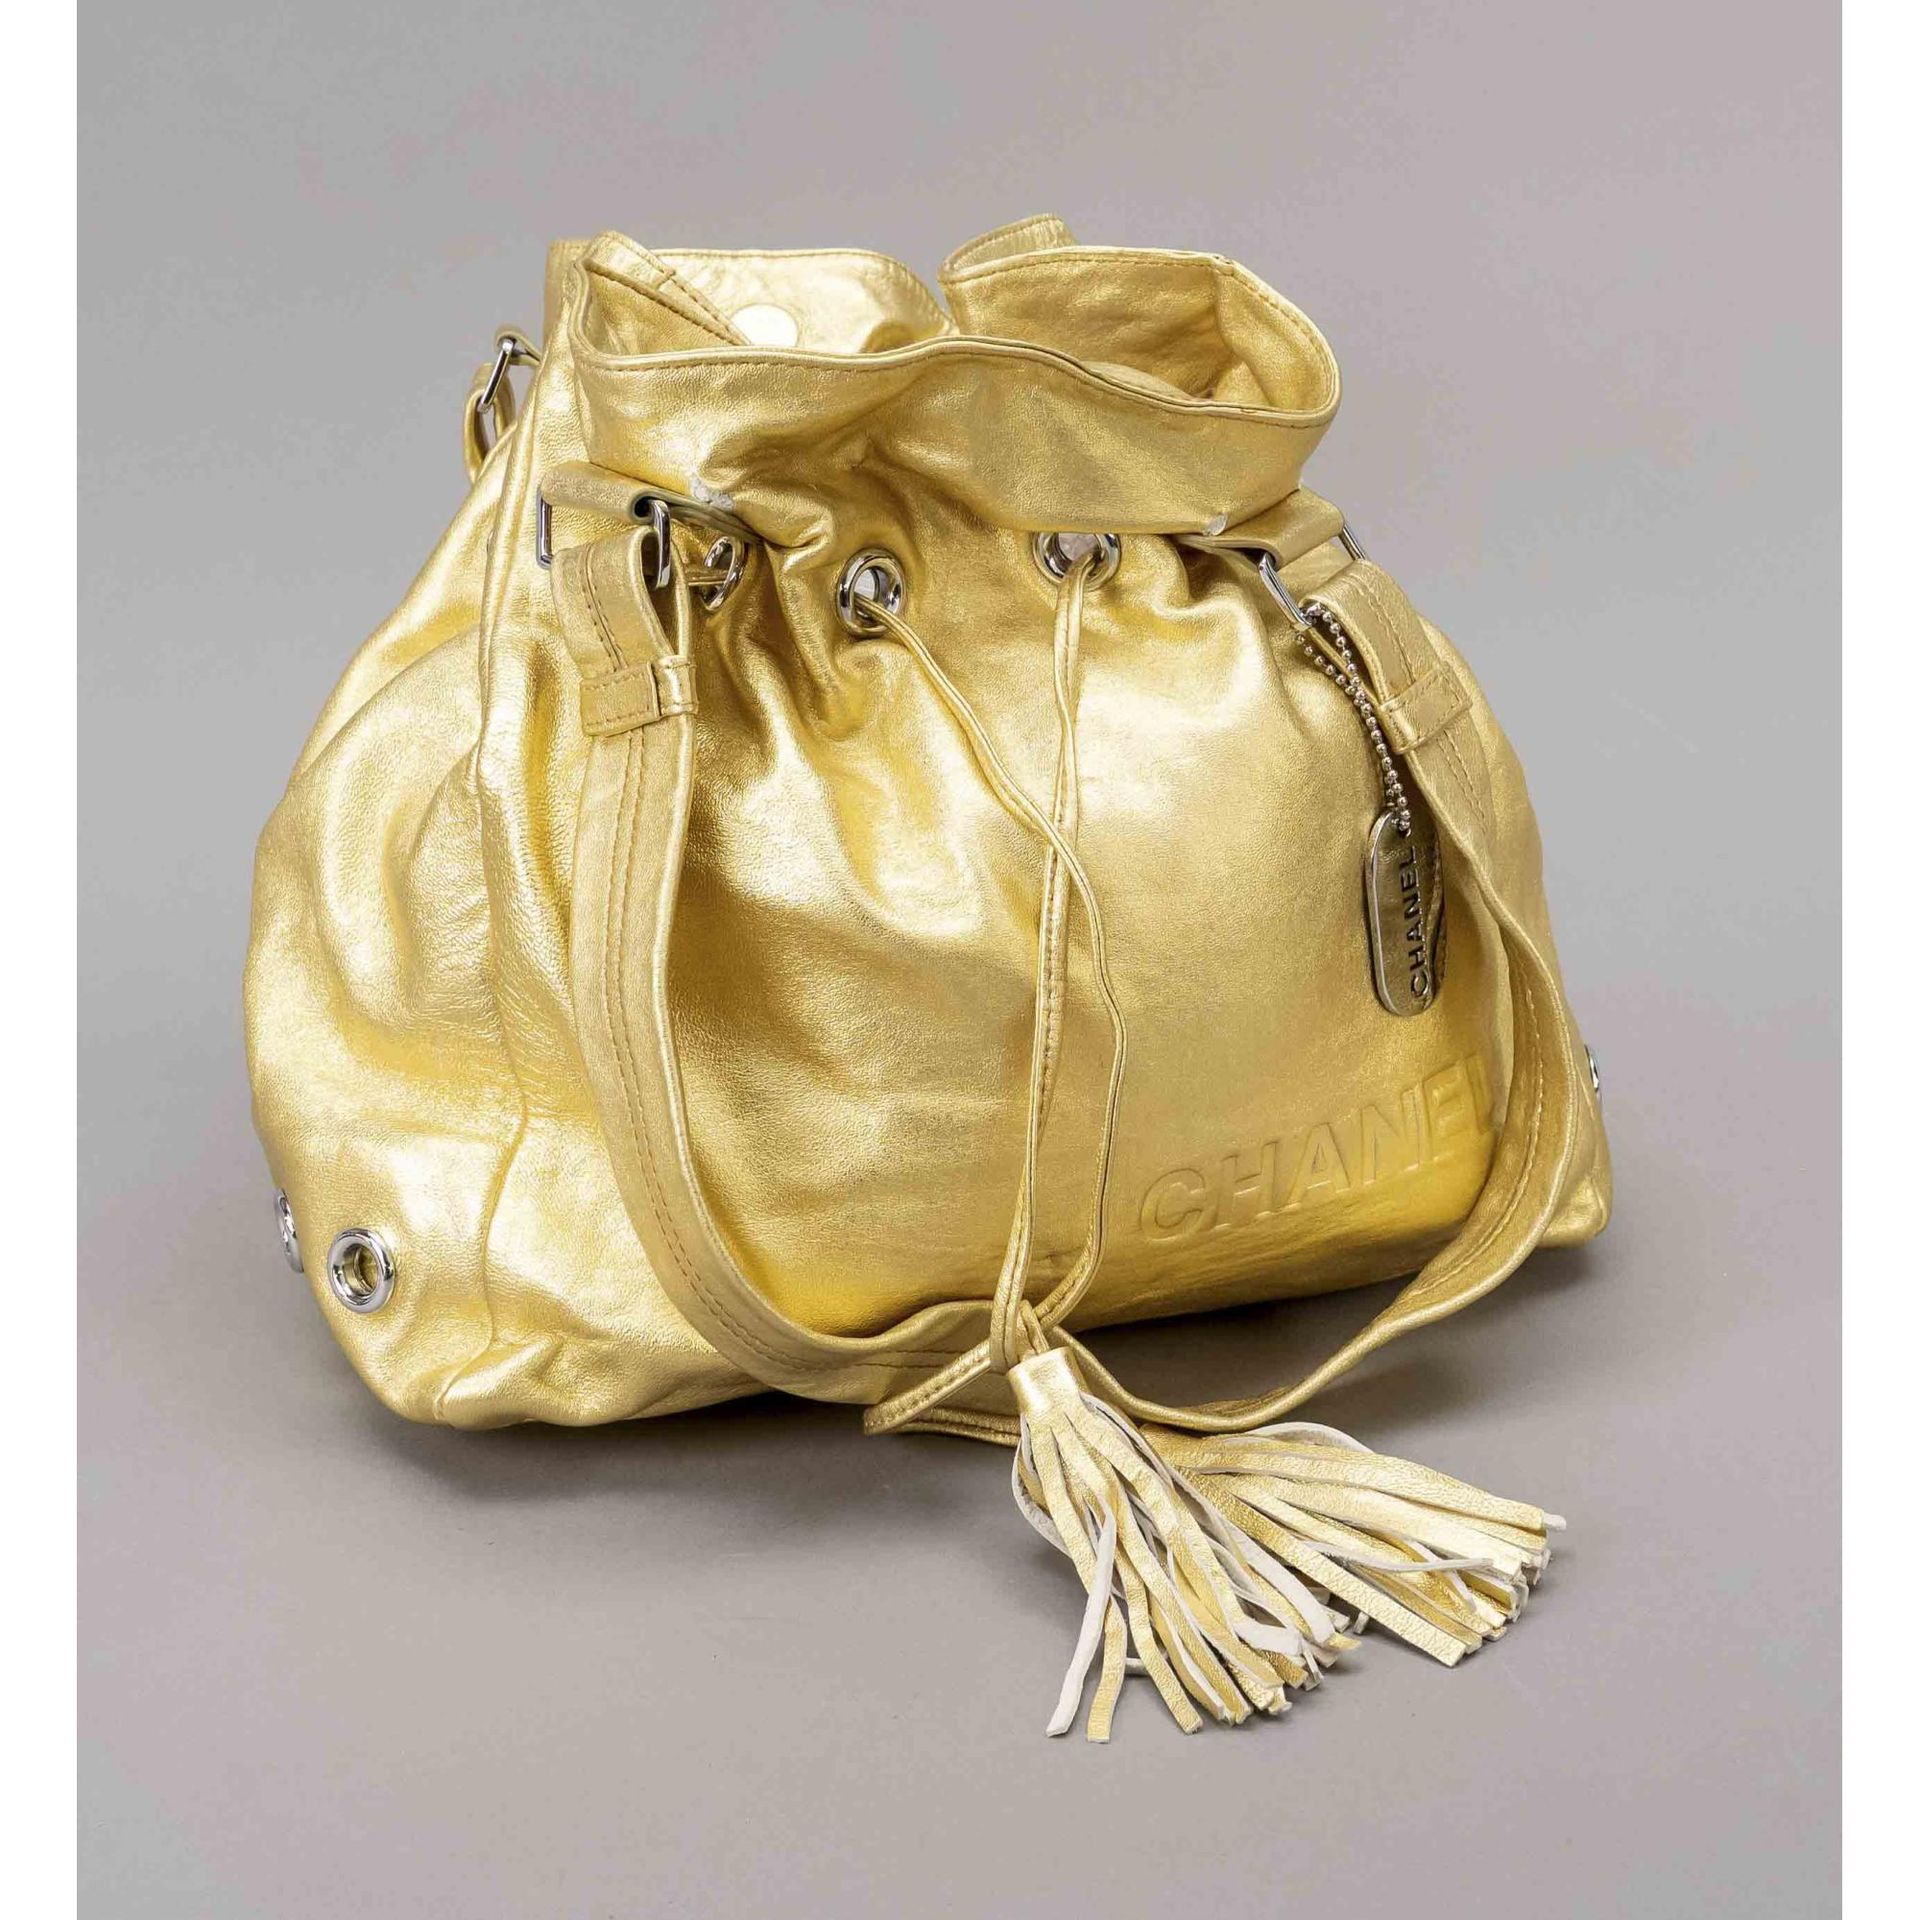 Chanel, Golden Vintage Bucket Bag, gold-tone coated soft…